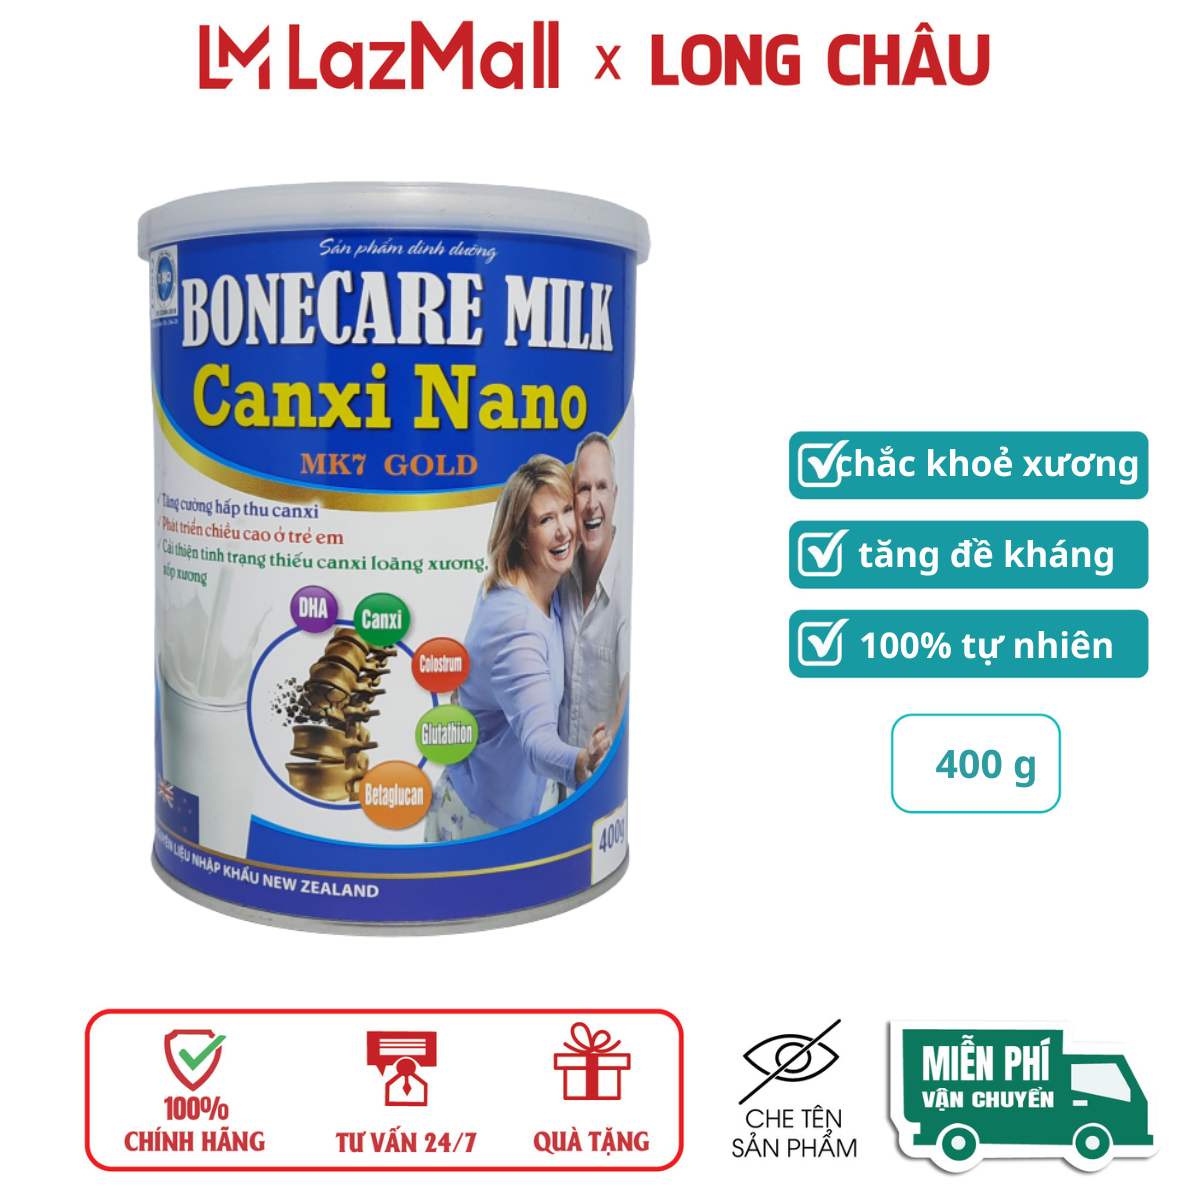 Sữa bột Bonecare Milk Canxi Nano MK7 Gold giúp hấp thu canxi, phát triển chiều cao ở trẻ em, giảm loãng xương